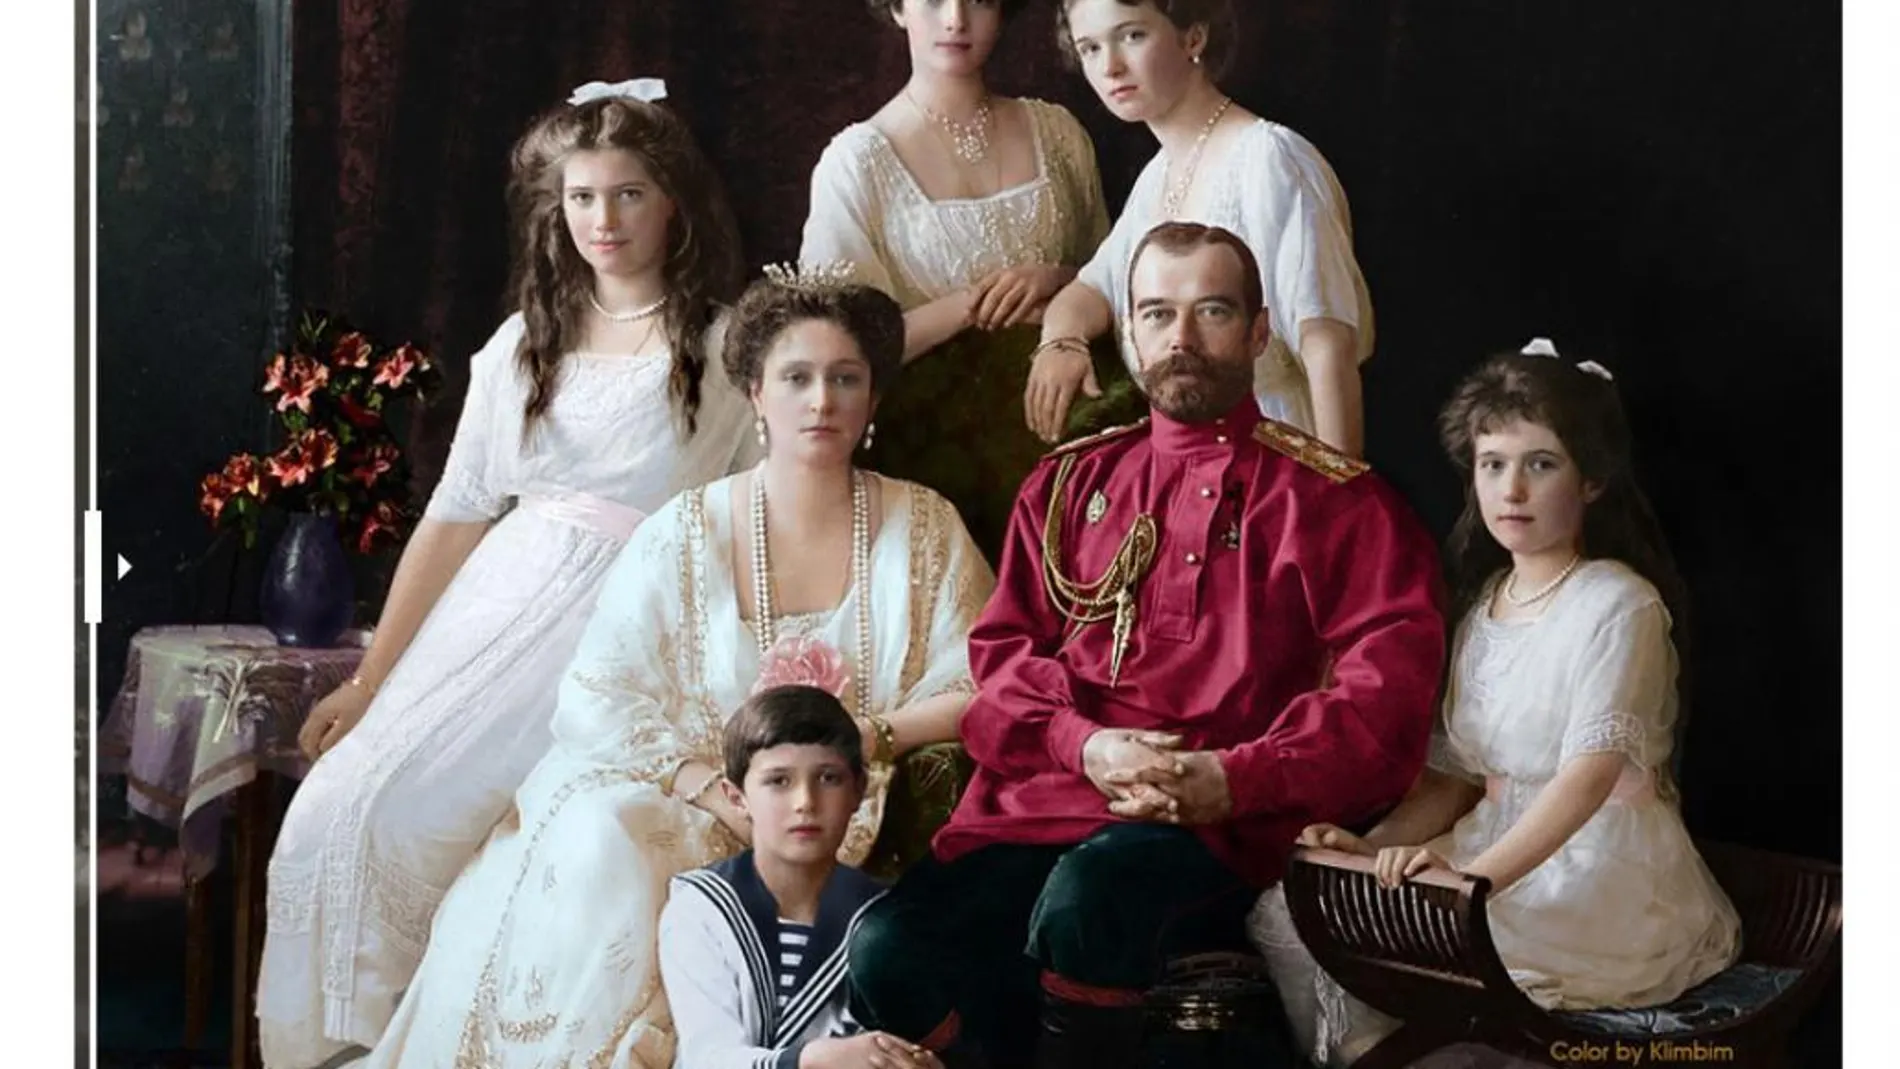 Posado del último zar, Nicolás II, junto a su familia